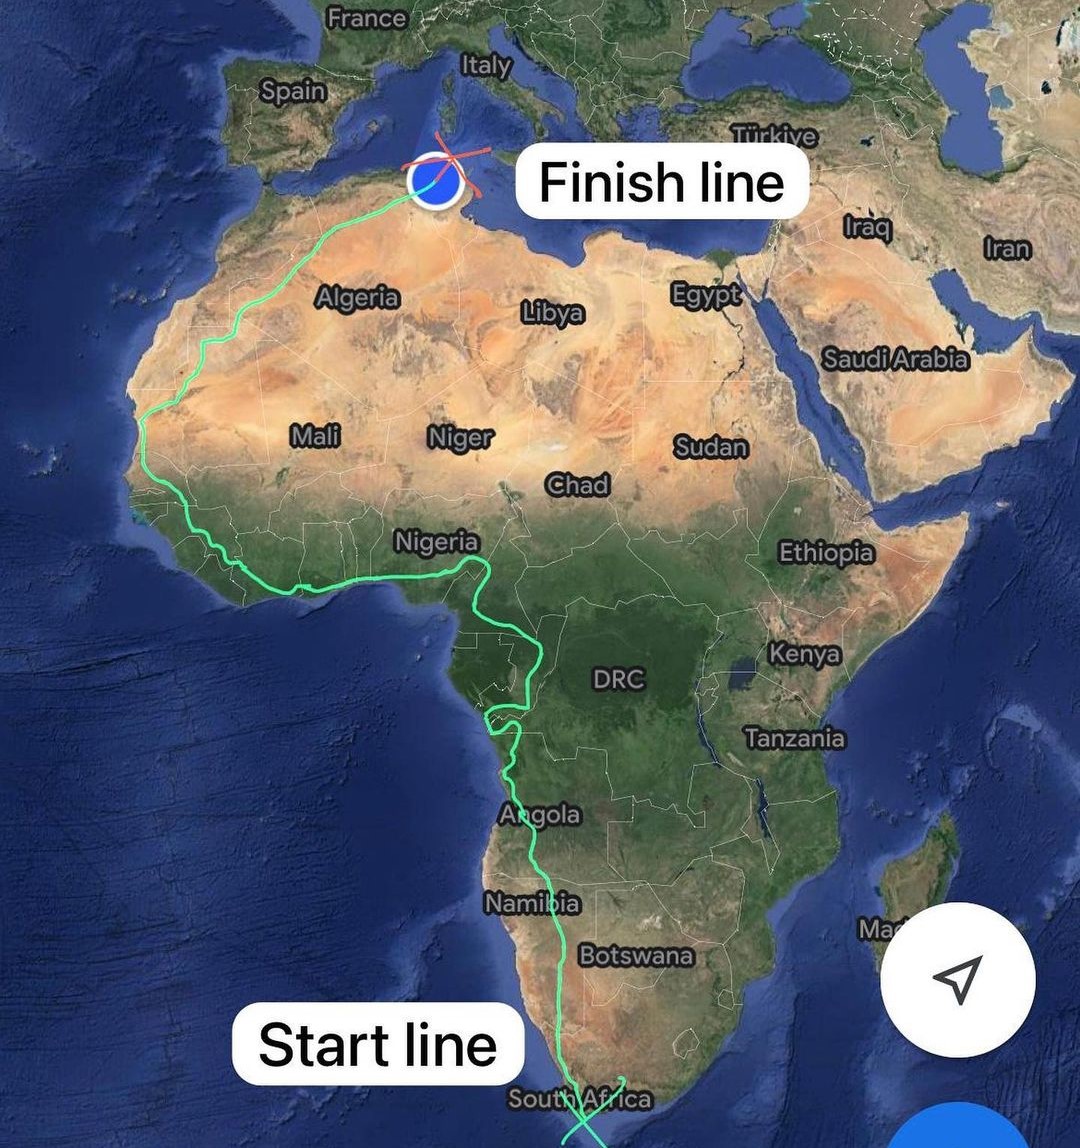 ¡De punta a punta! Hombre cruzó África corriendo casi un año entero Ruseell Cook recorrió 16 mil kilómetros y recaudó 700.000 dólares para obras benéficas.